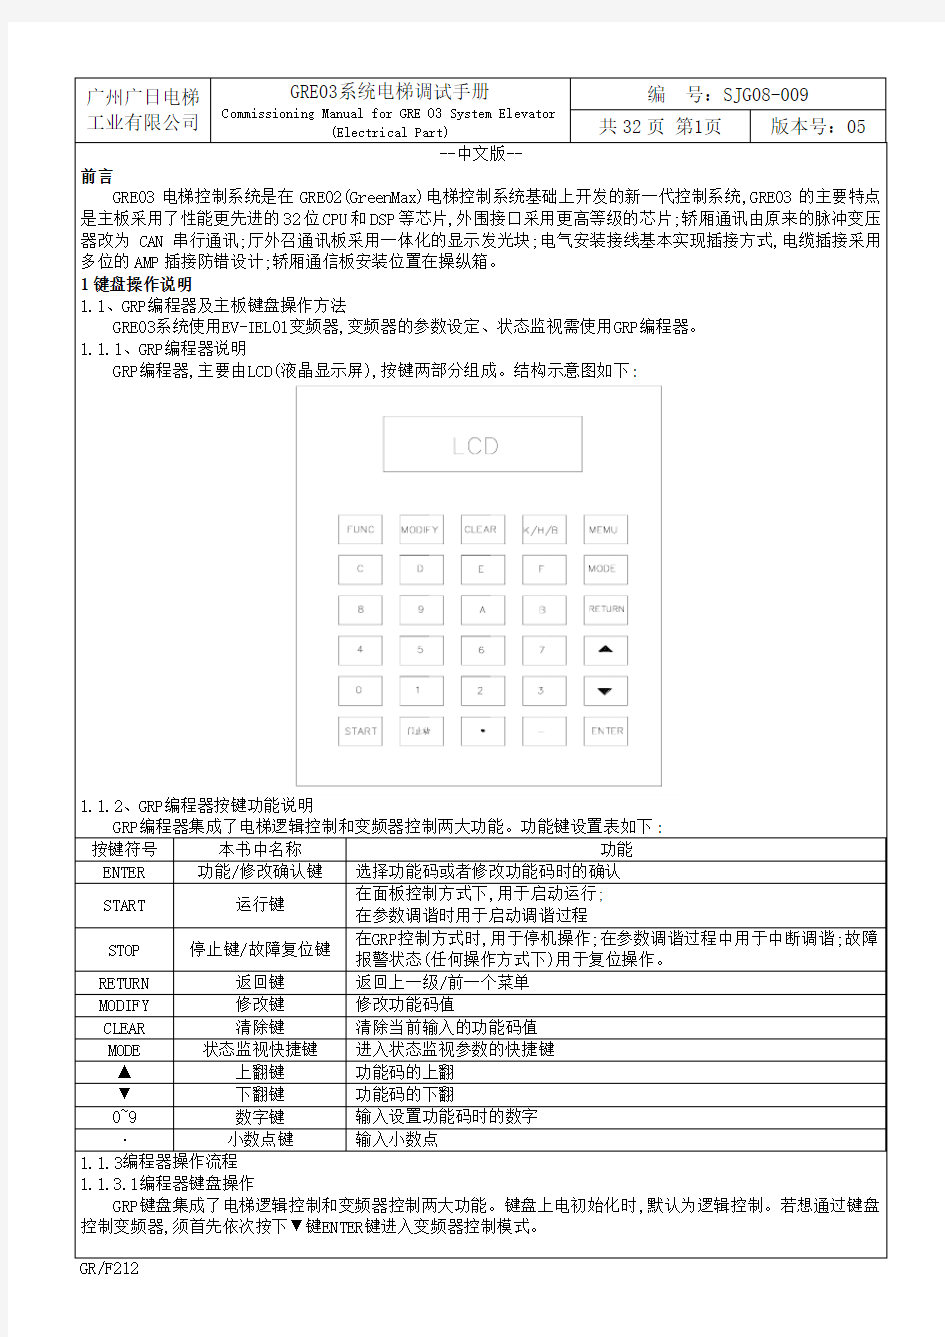 GRE03系统电梯调试手册SJG08-009V05(2011.8)